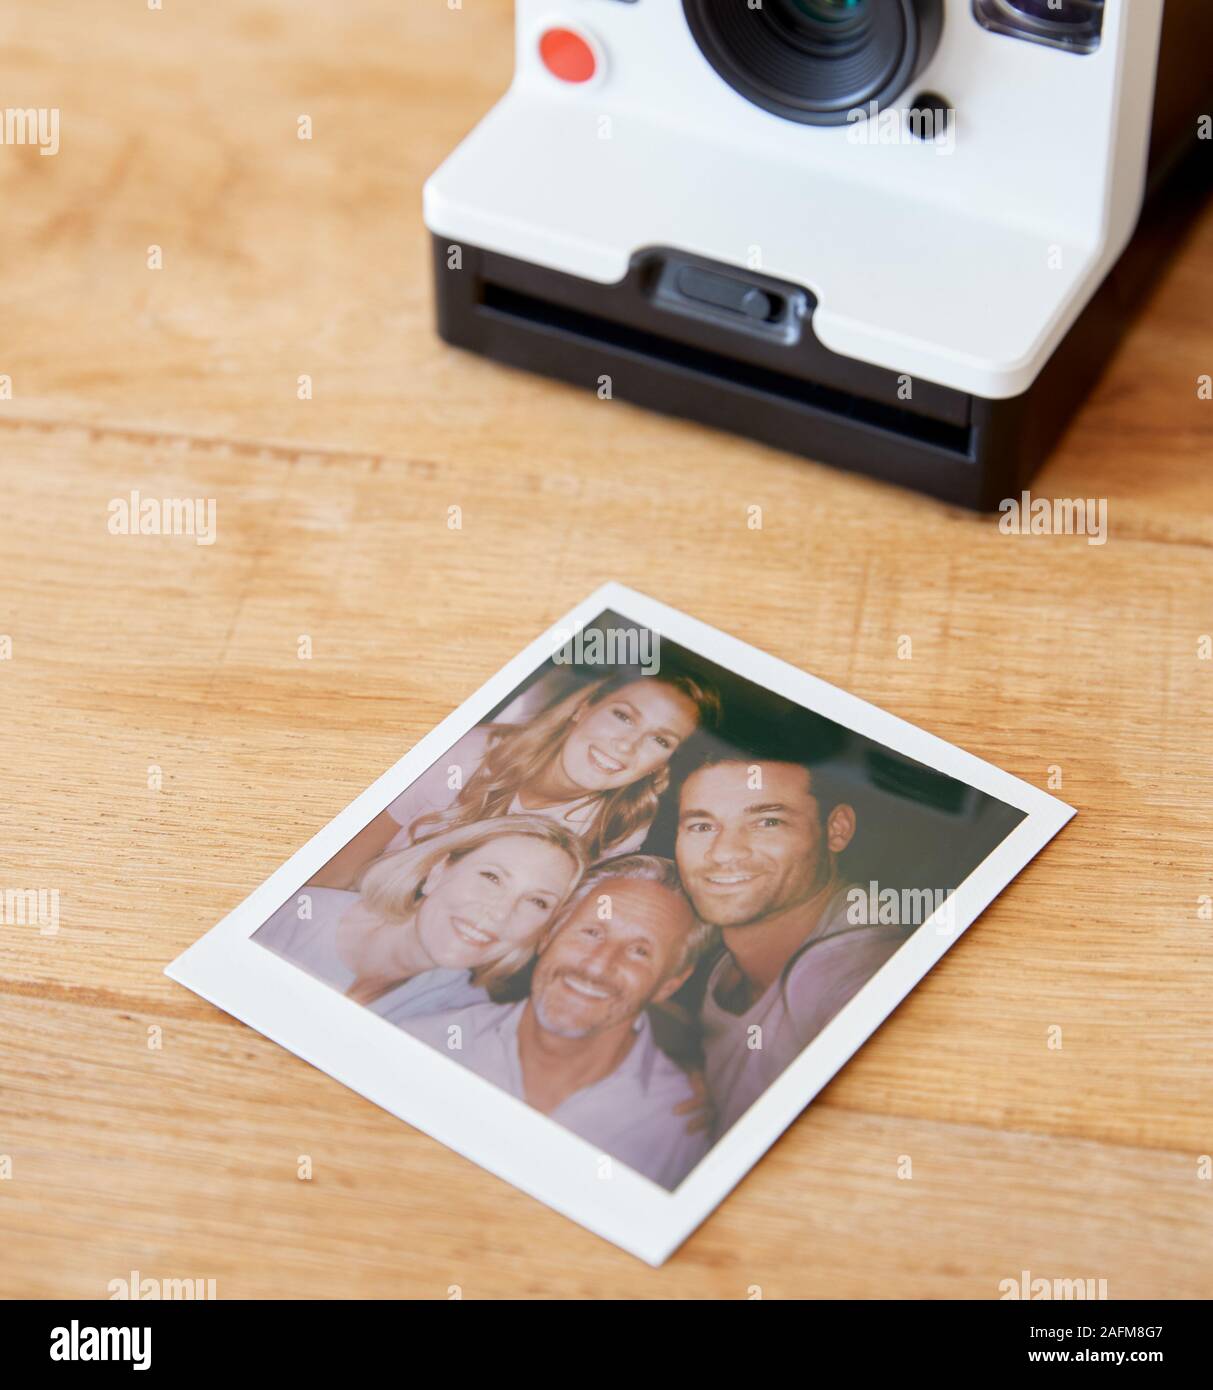 Vintage Pellicola Istante fotocamera con stampa di genitori Senior e adulto prole in posa per Selfie Foto Stock